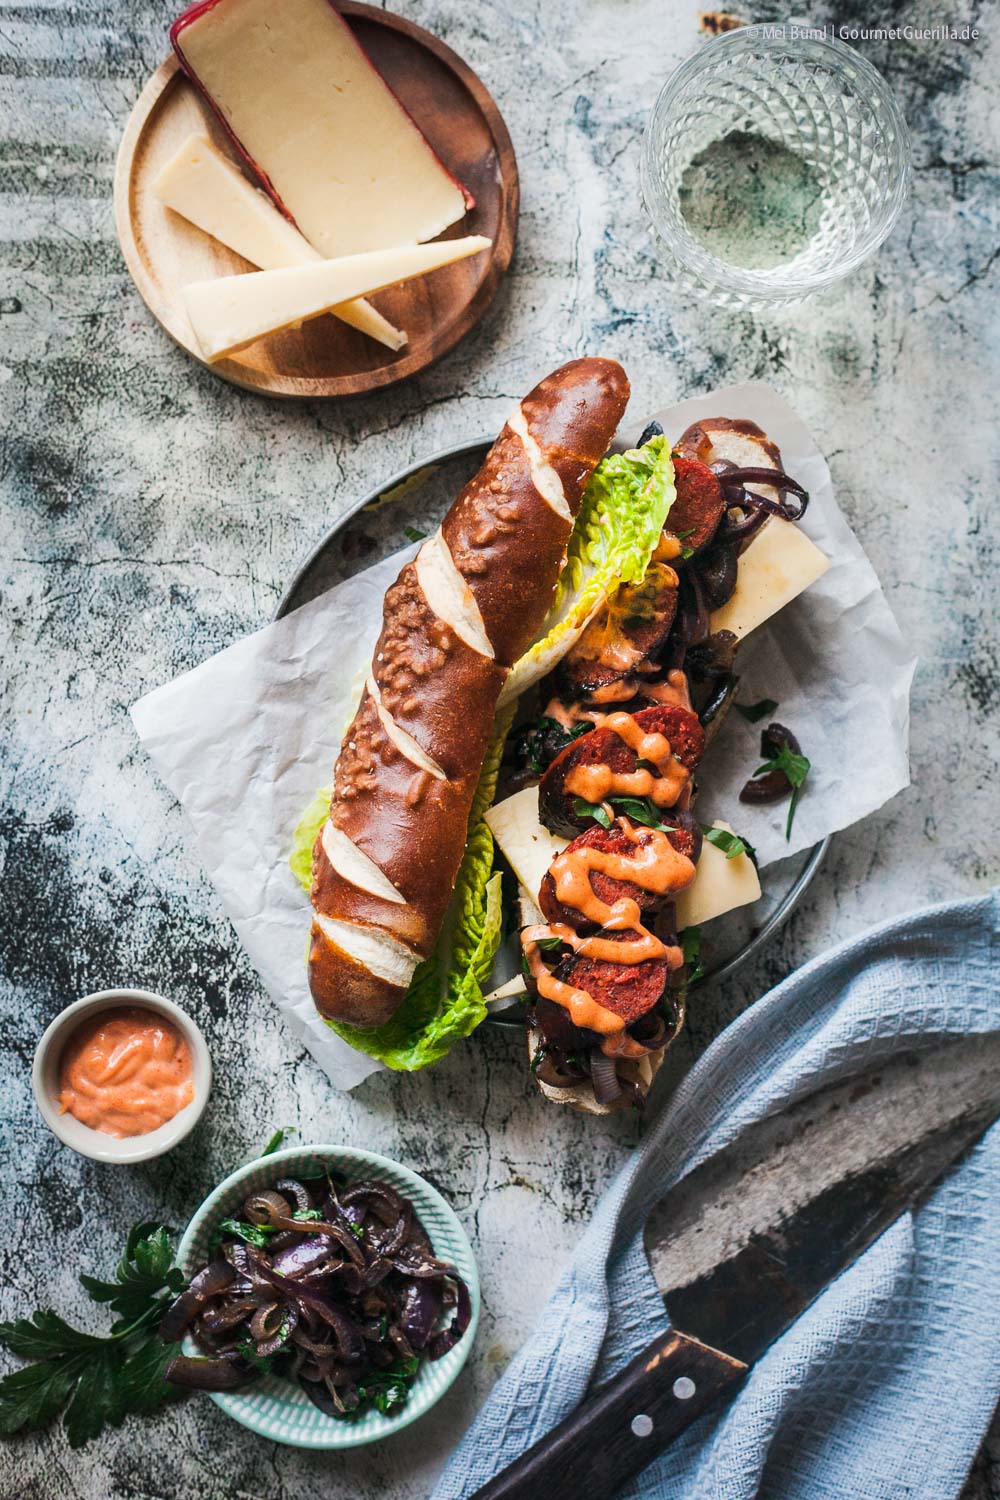 Chorizo Hot Dog mit geschmorten Zwiebeln, Räuchermayo und Landkäse aus Heumilch g.t.S. | GourmetGuerilla.de